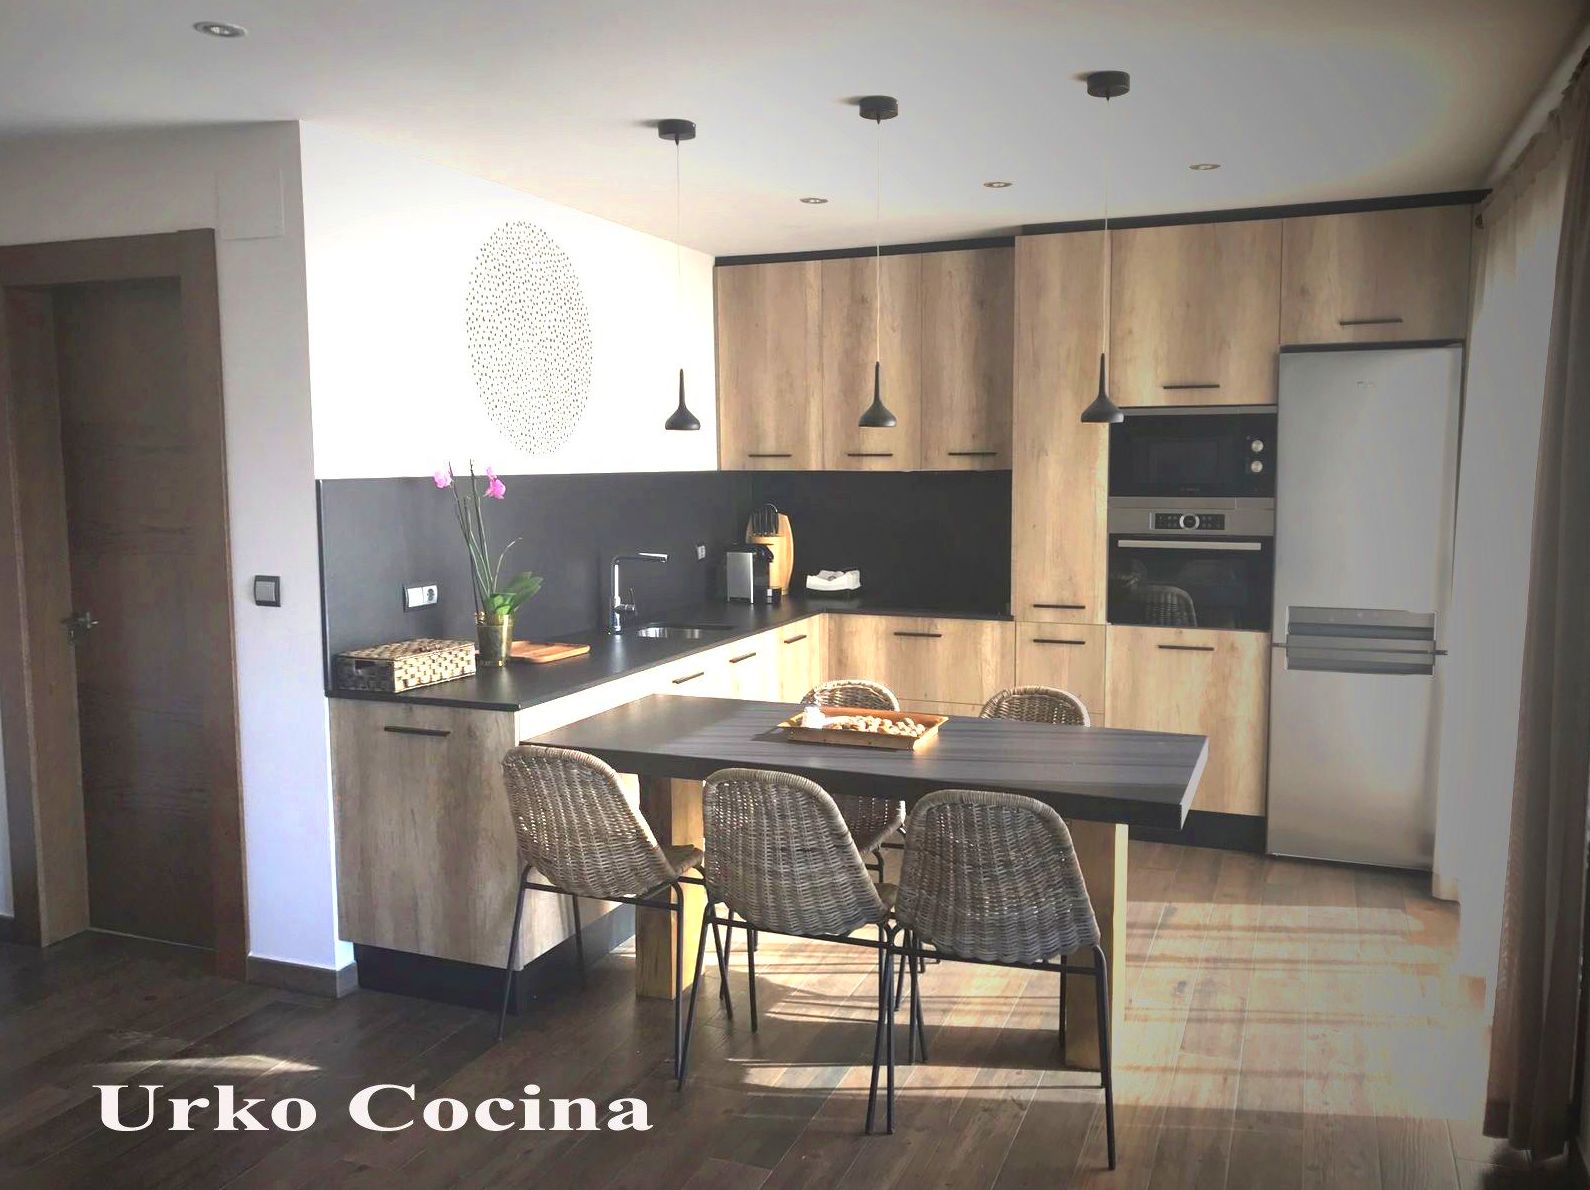 Foto 8 de Muebles de baño y cocina en Bilbao | Urko Cocina